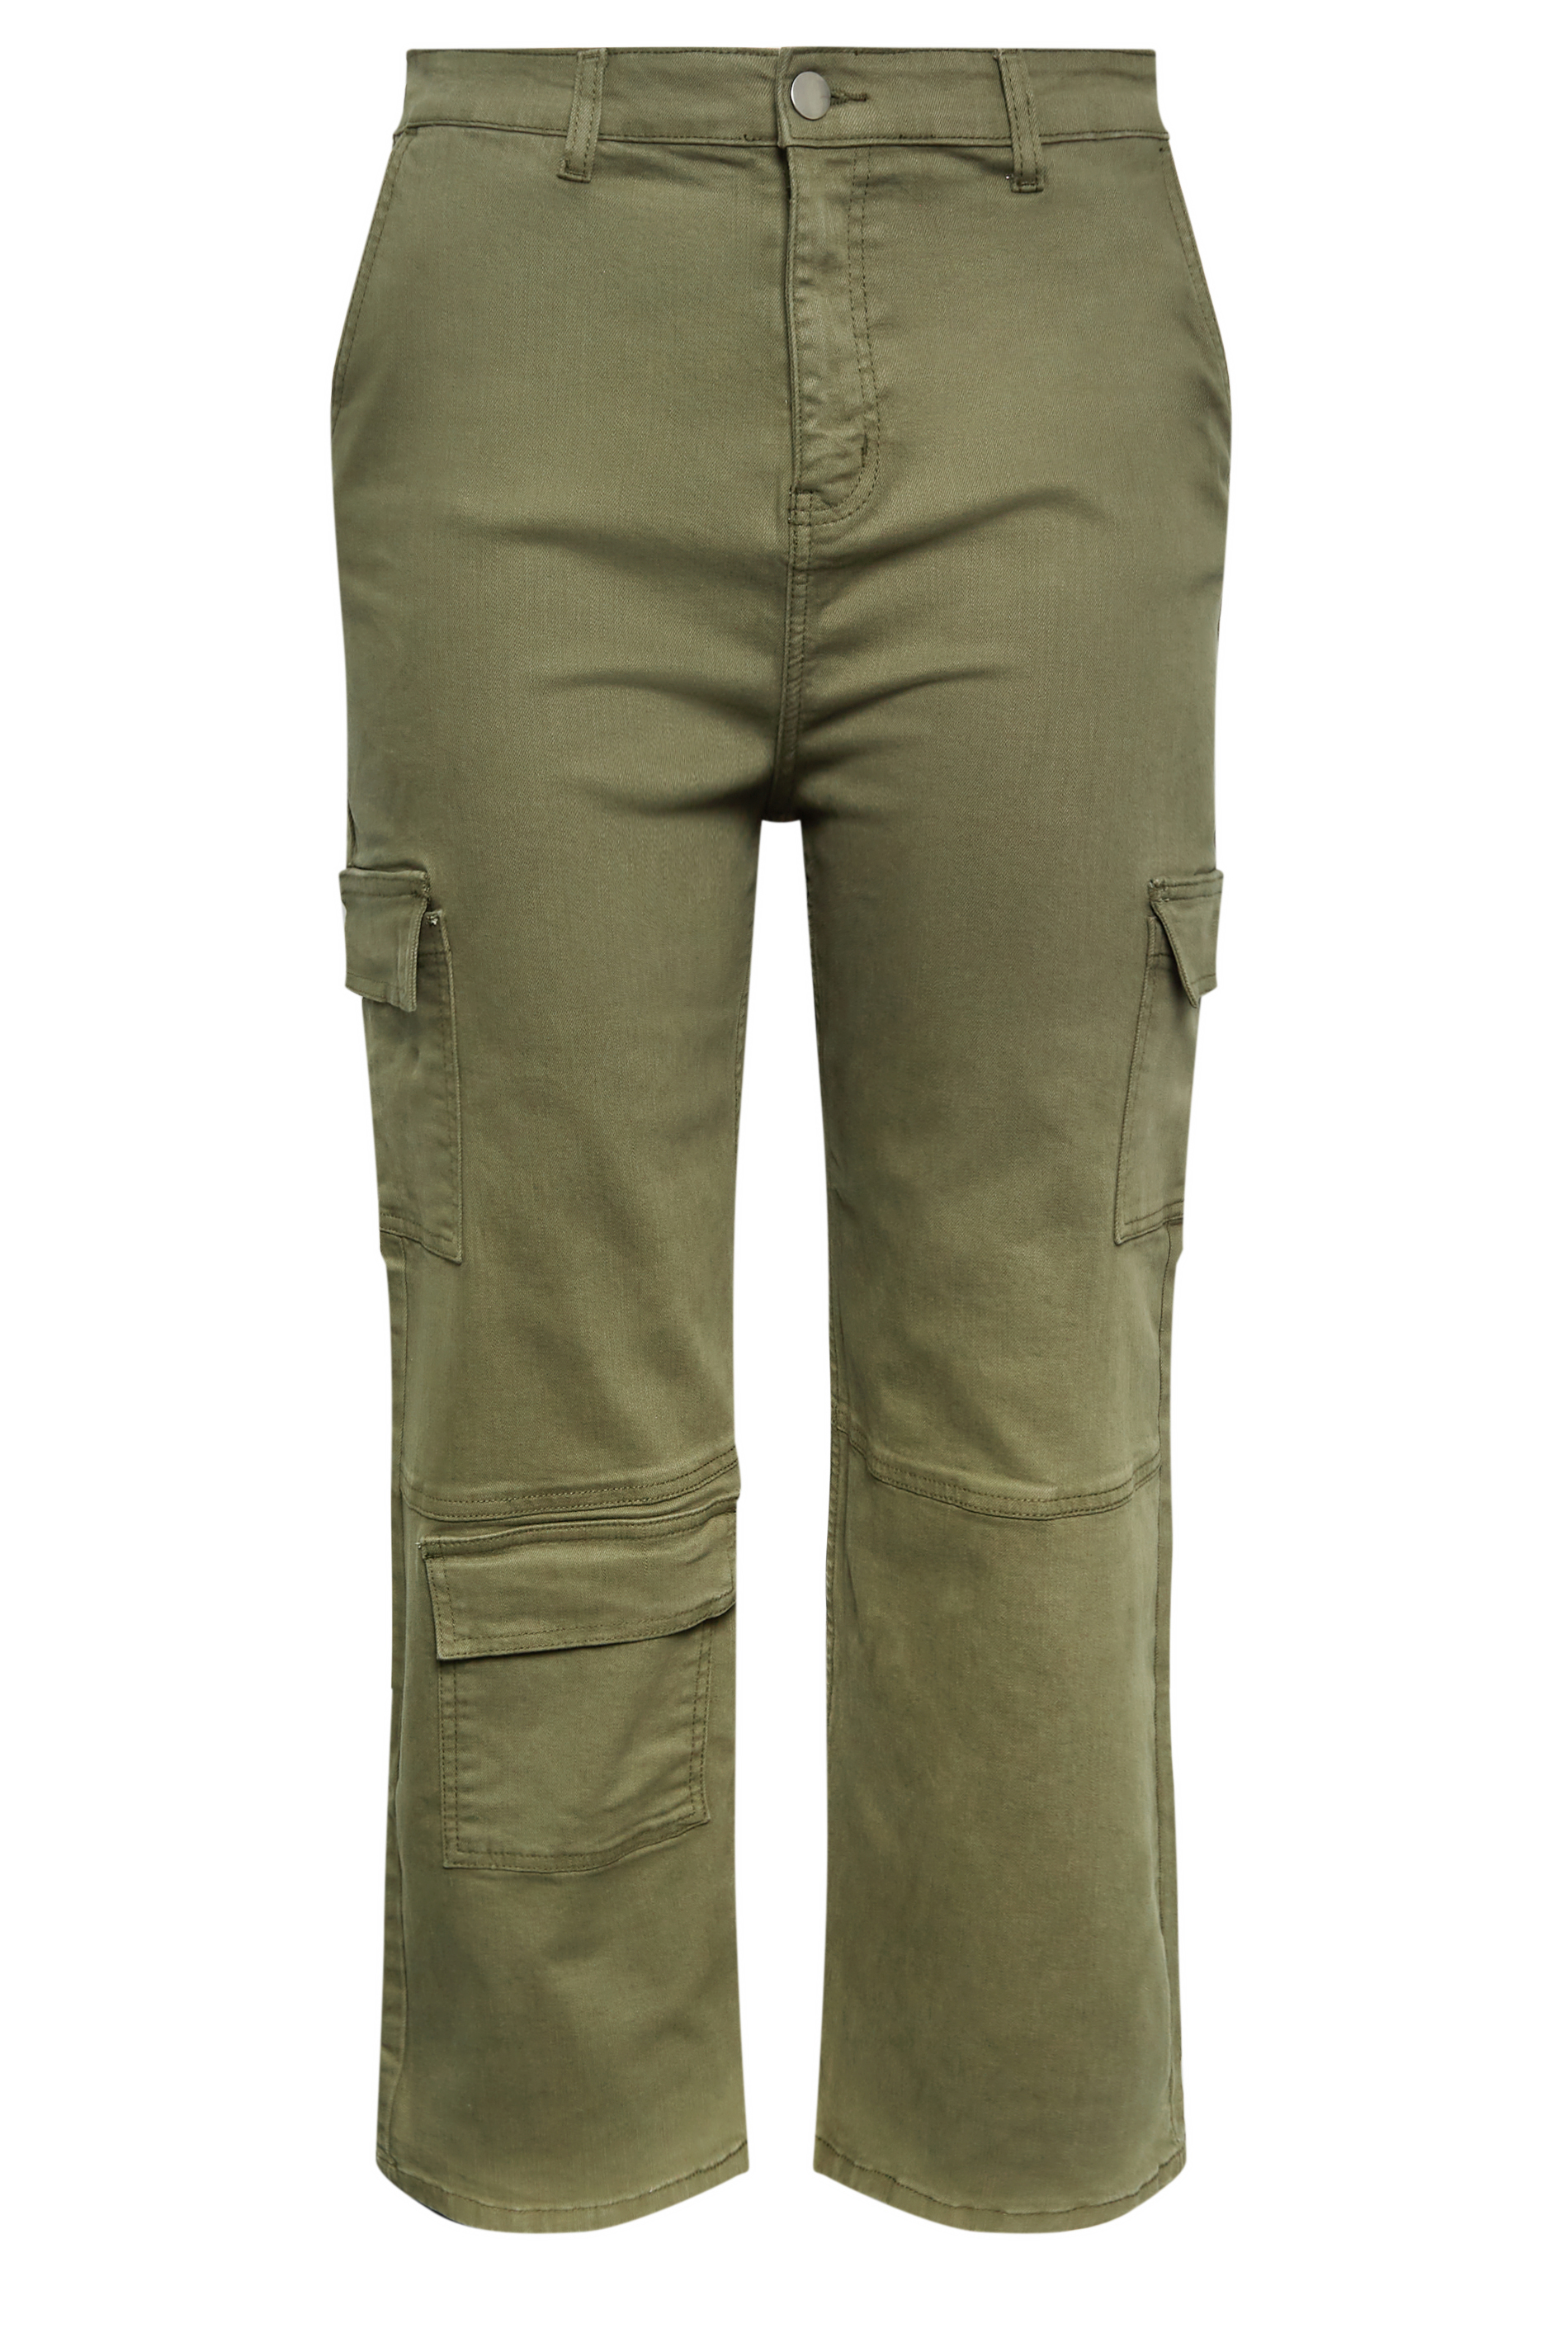 UNICOR Store: Khaki Elastic Waist Trousers without Pockets